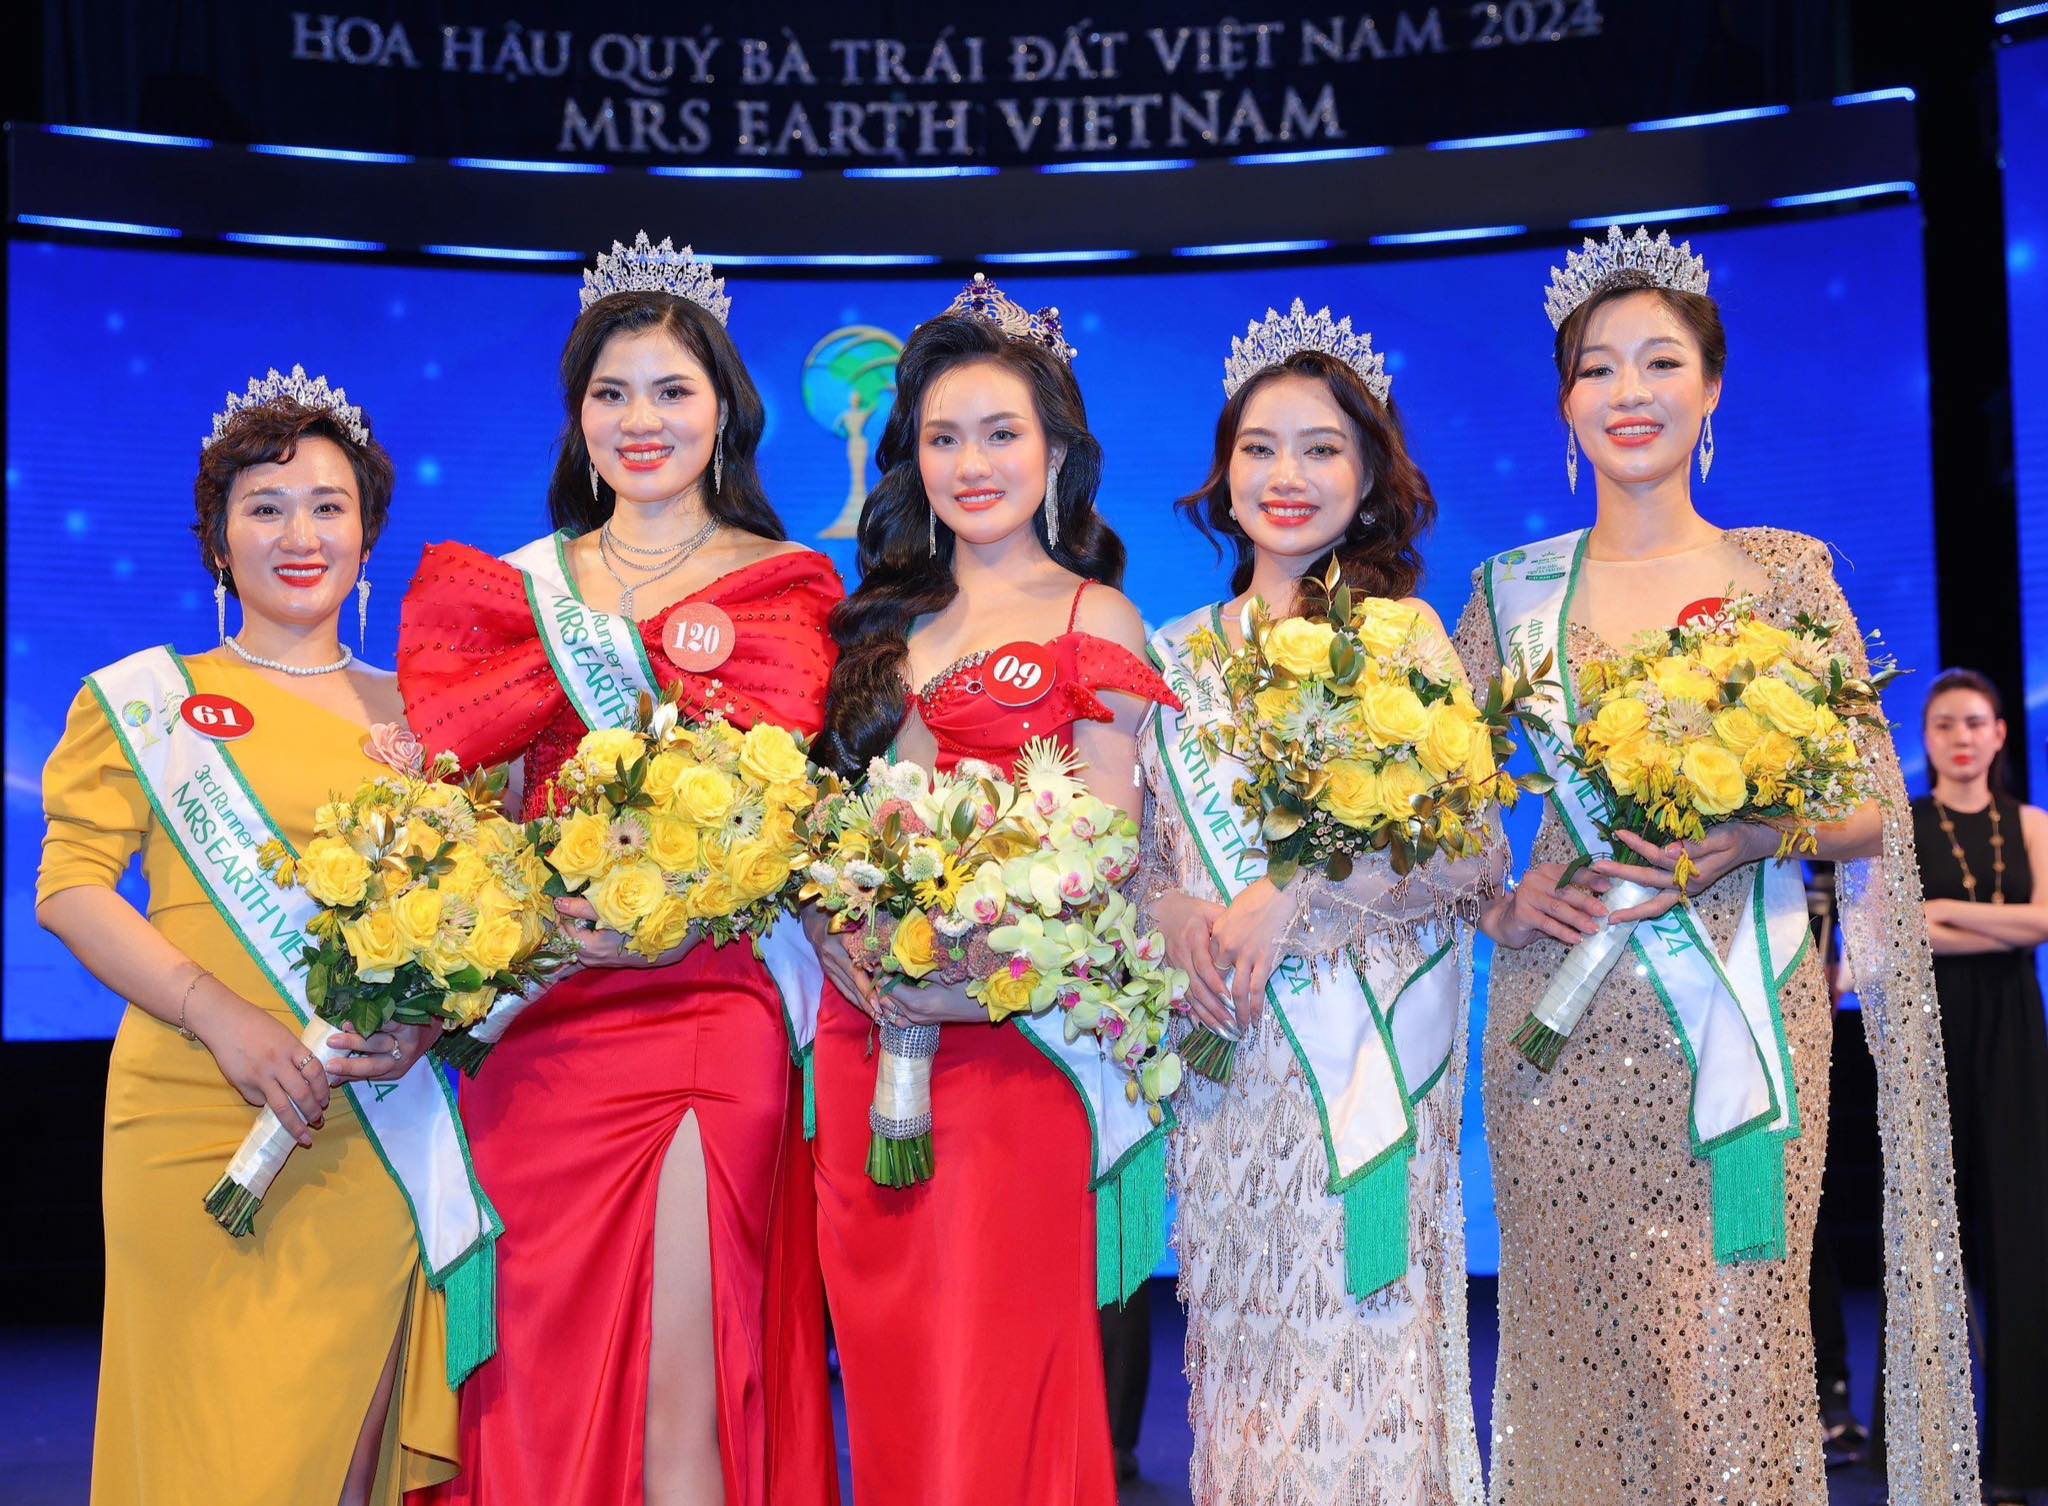 Chân dung người đẹp Phú Thọ vừa đăng quang Á hậu Mrs Earth Vietnam 2024 - Ảnh 1.